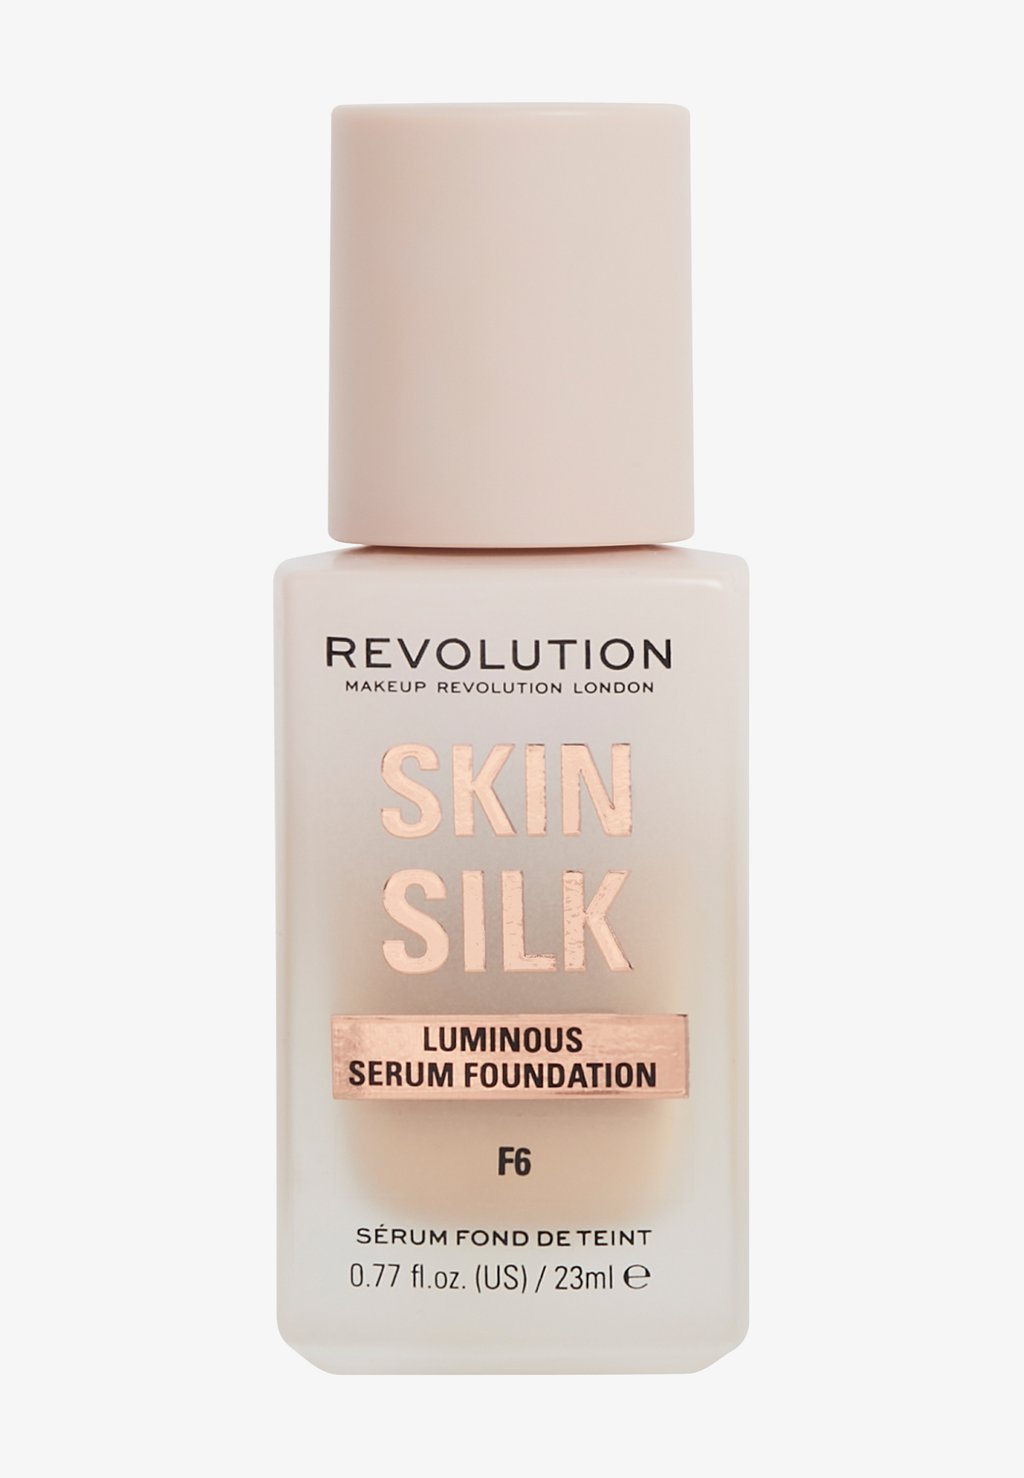 Тональный крем Revolution Skin Silk Serum Foundation Makeup Revolution, цвет f6